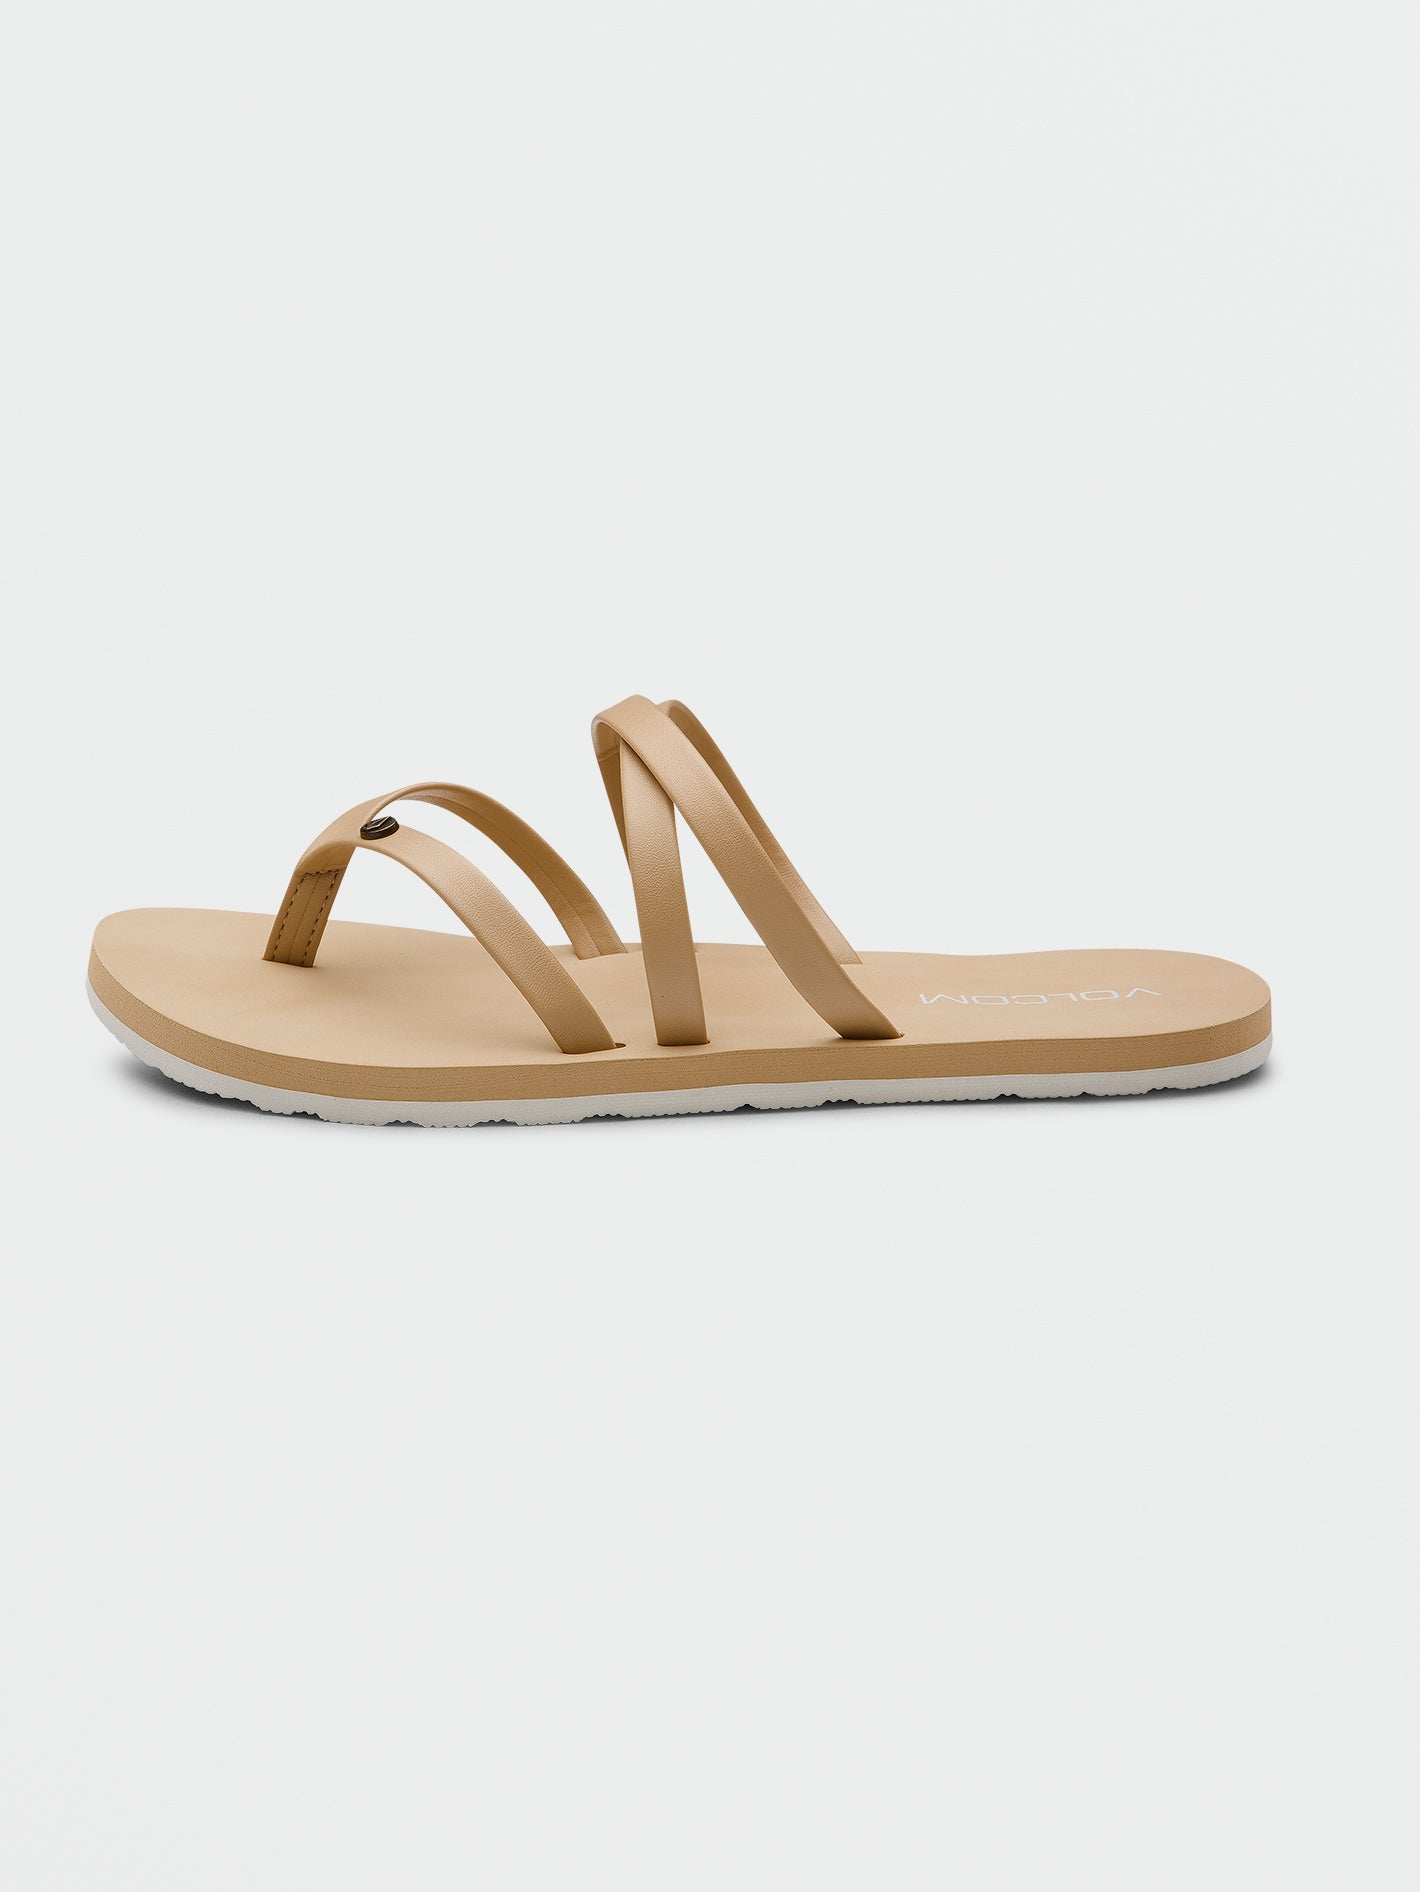 Easy Breezy II Sandals - Hazelnut – Volcom US